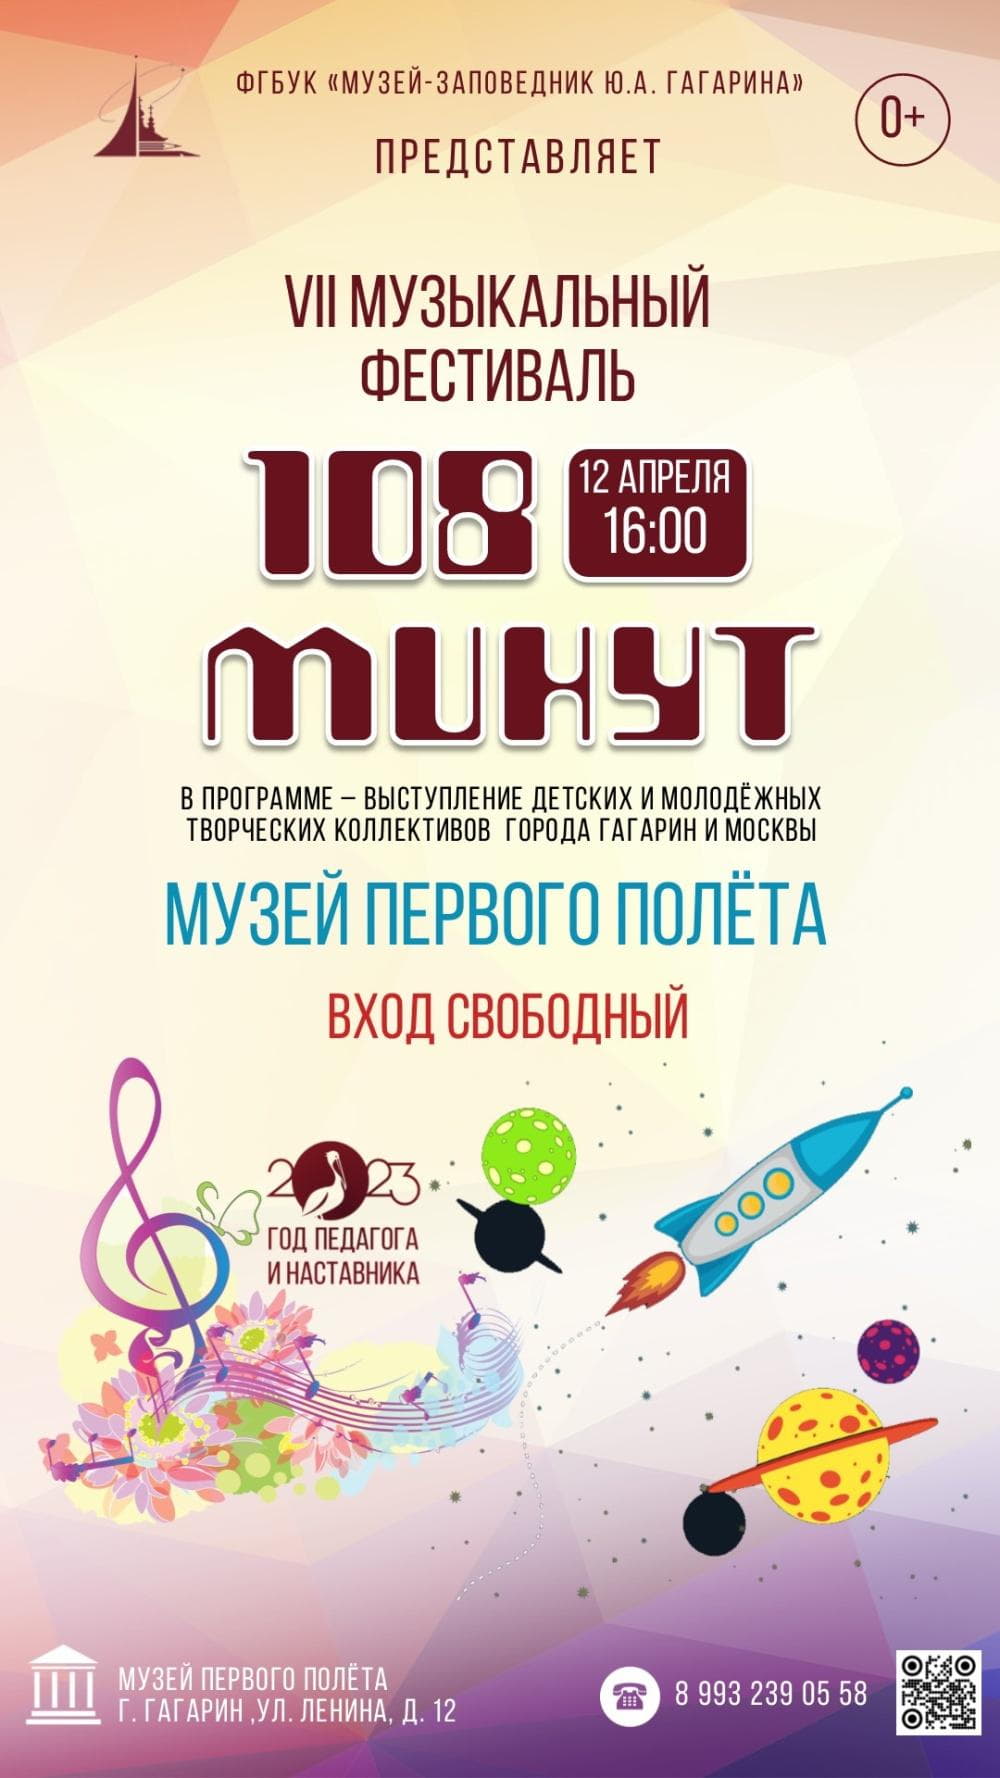 Фестиваль «108 минут» 